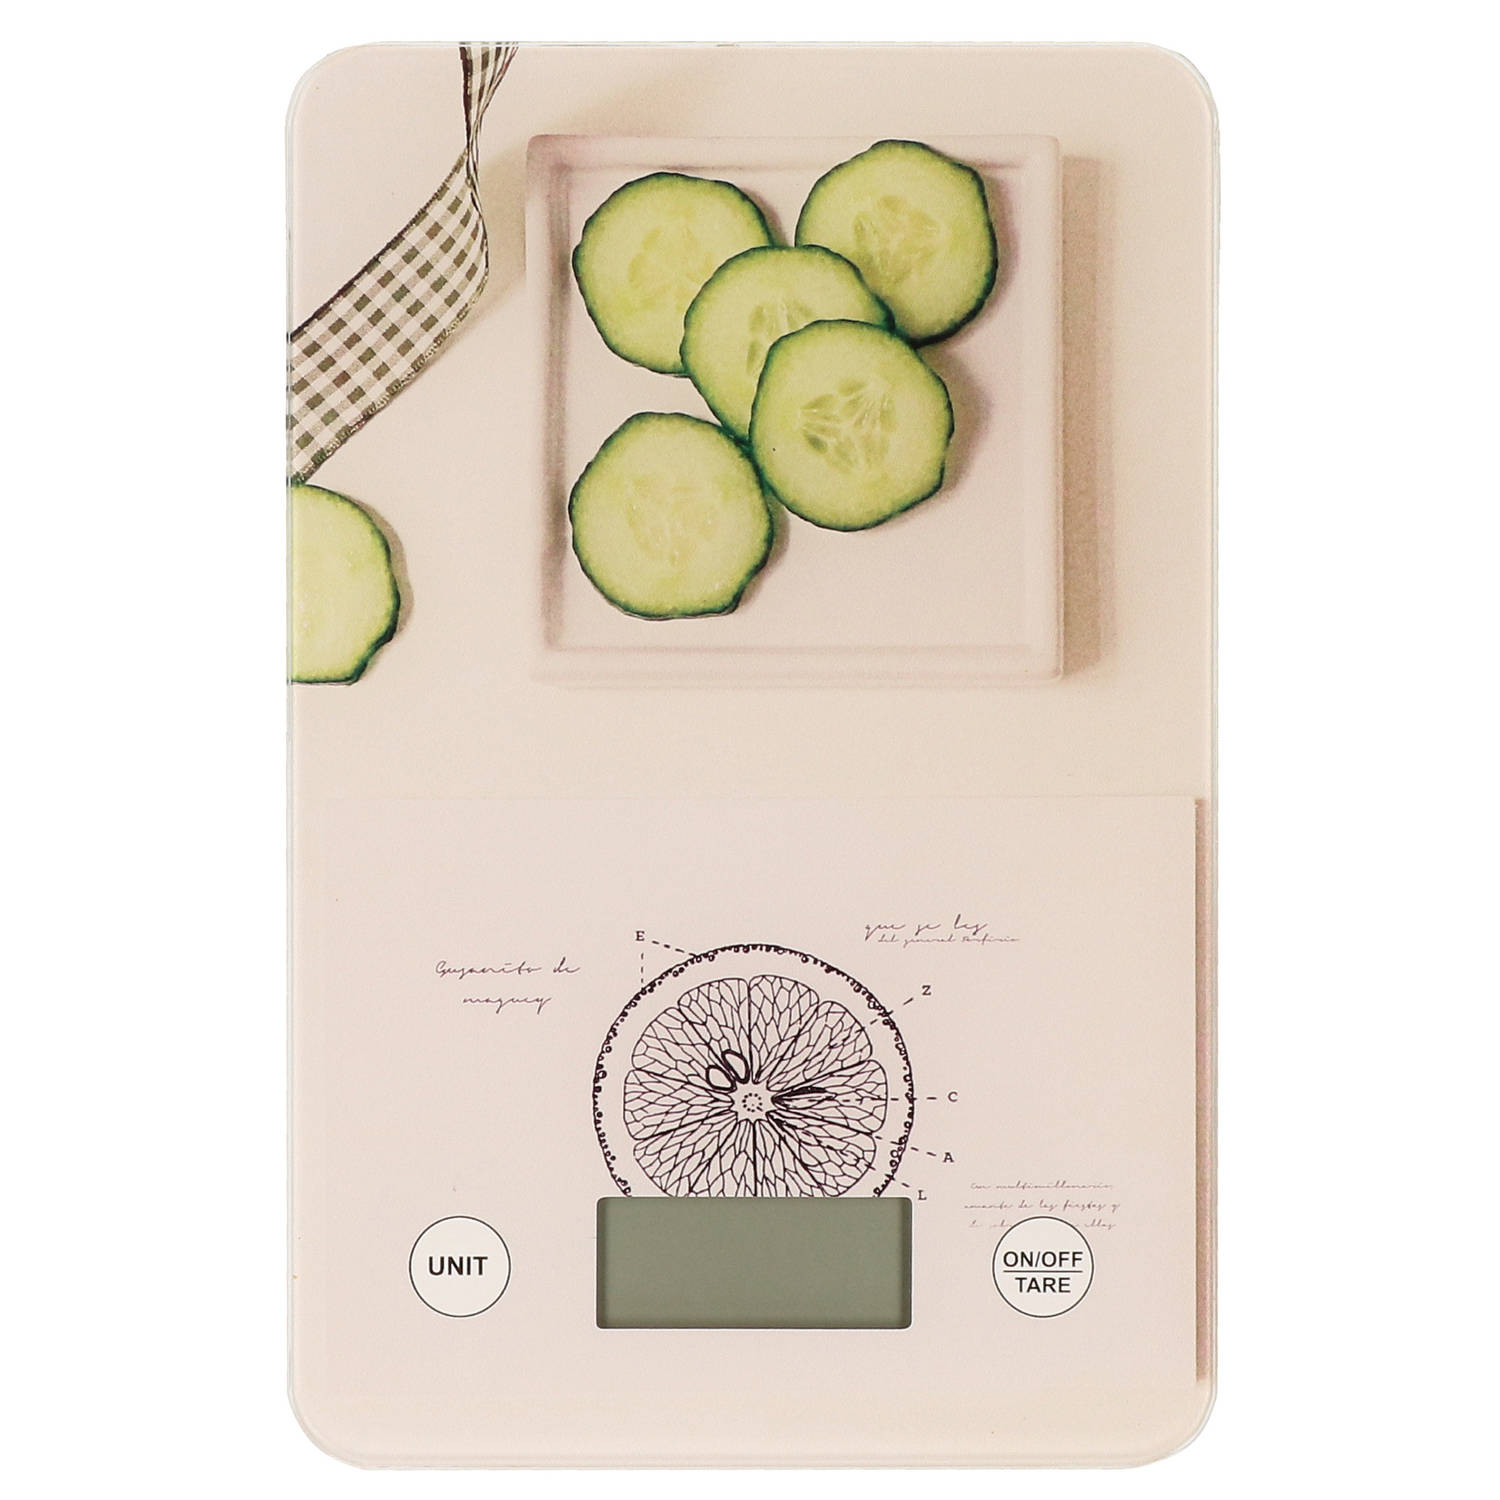 Digitale keukenweegschaal met komkommer druk RVS 23 x 15 cm Keukenweegschaal